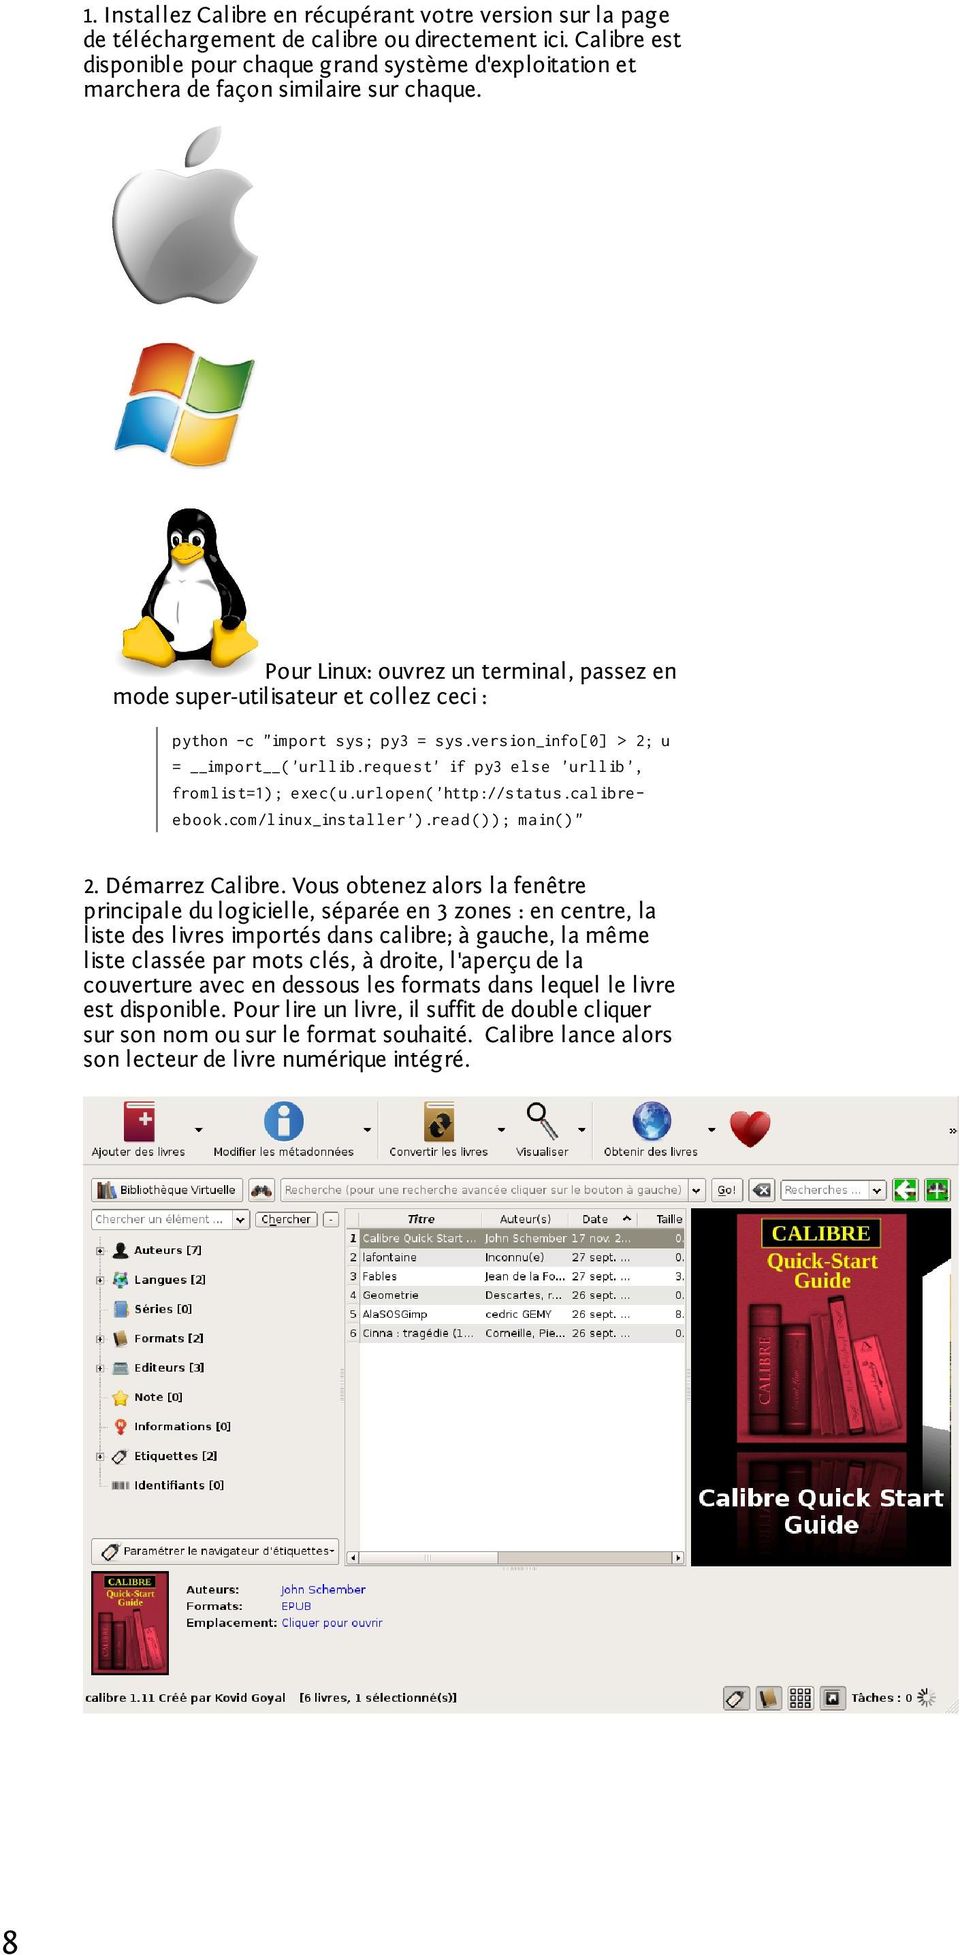 Pour Linux: ouvrez un terminal, passez en mode super-utilisateur et collez ceci : python -c "import sys; py3 = sys.version_info[0] > 2; u = import ('urllib.